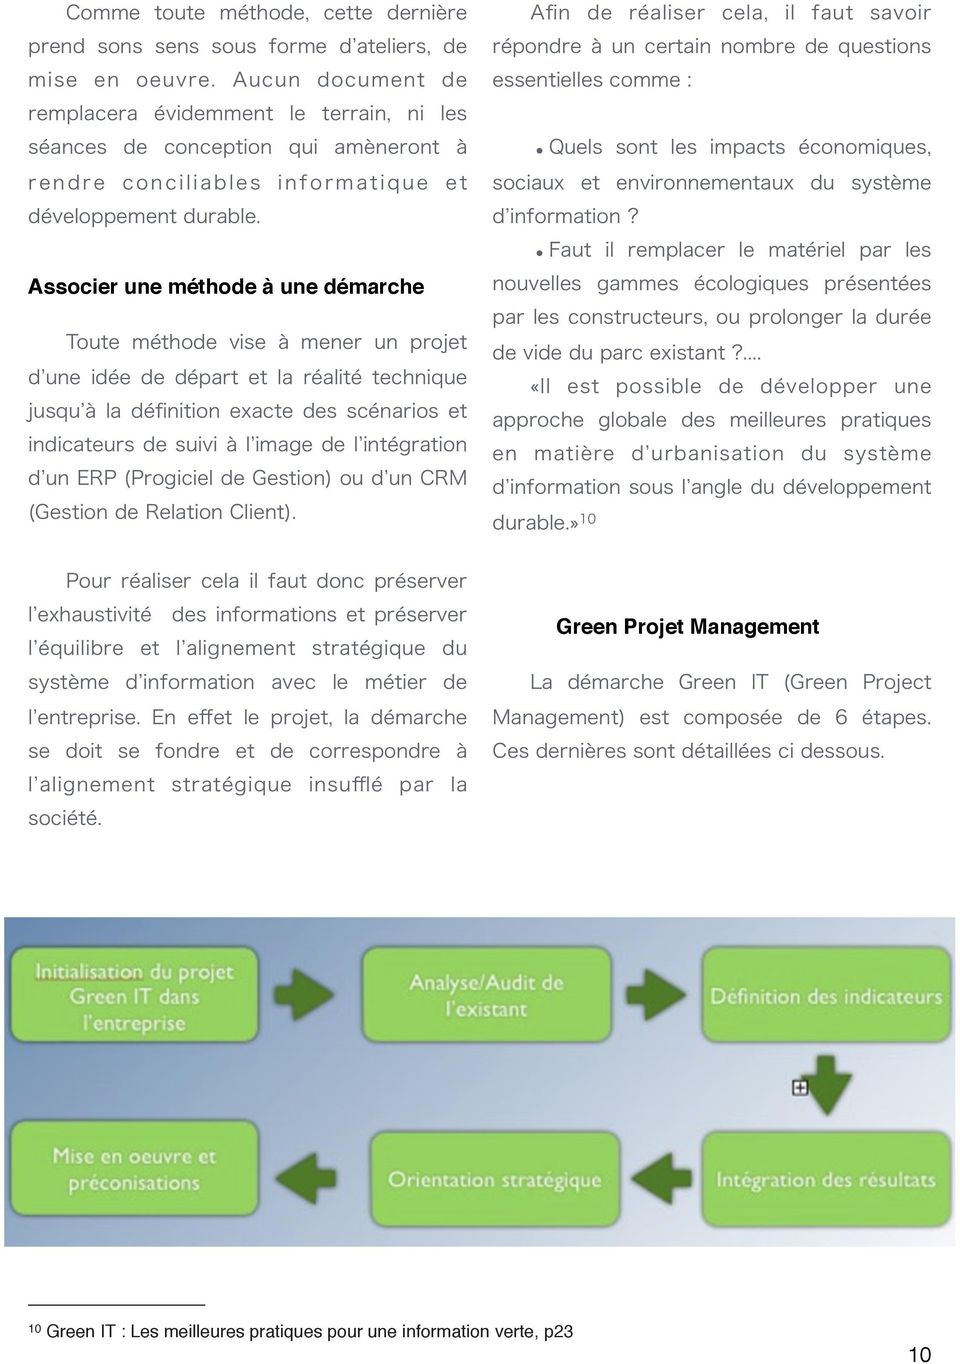 Green Projet Management 10 Green